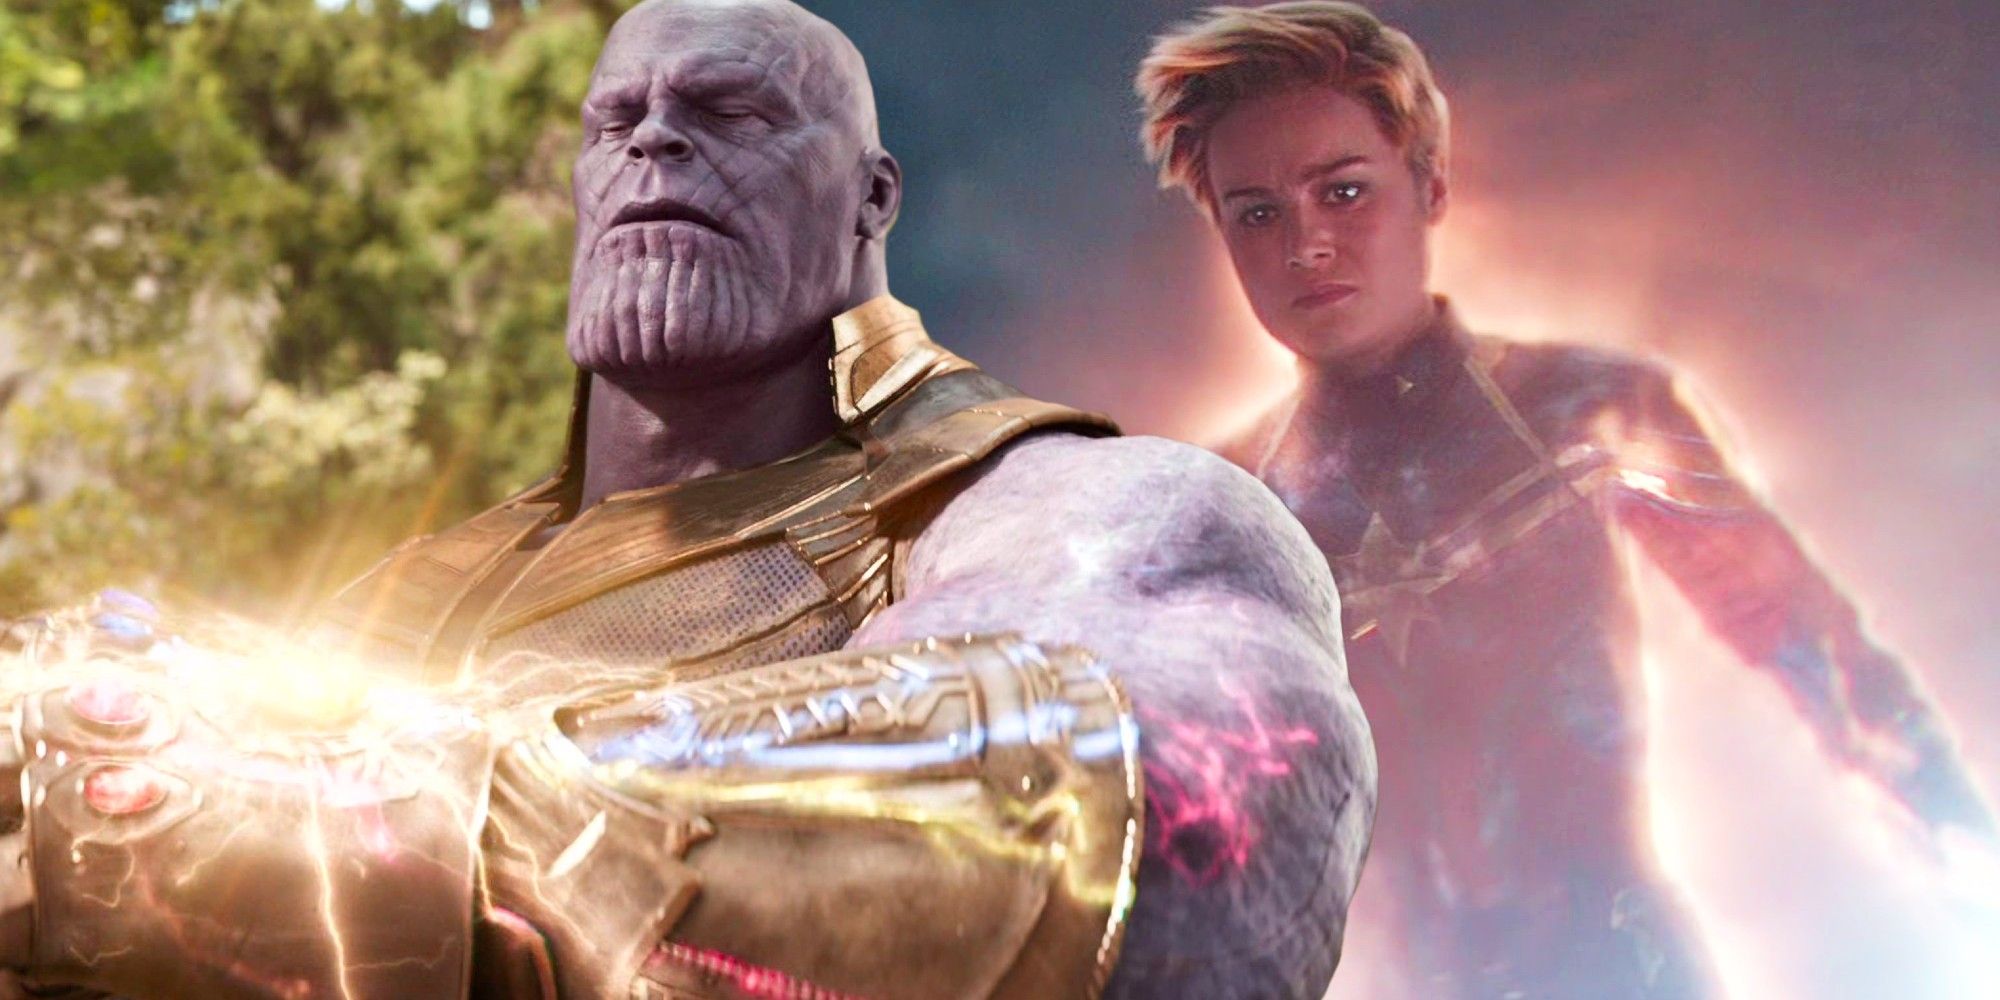 Thanos snap